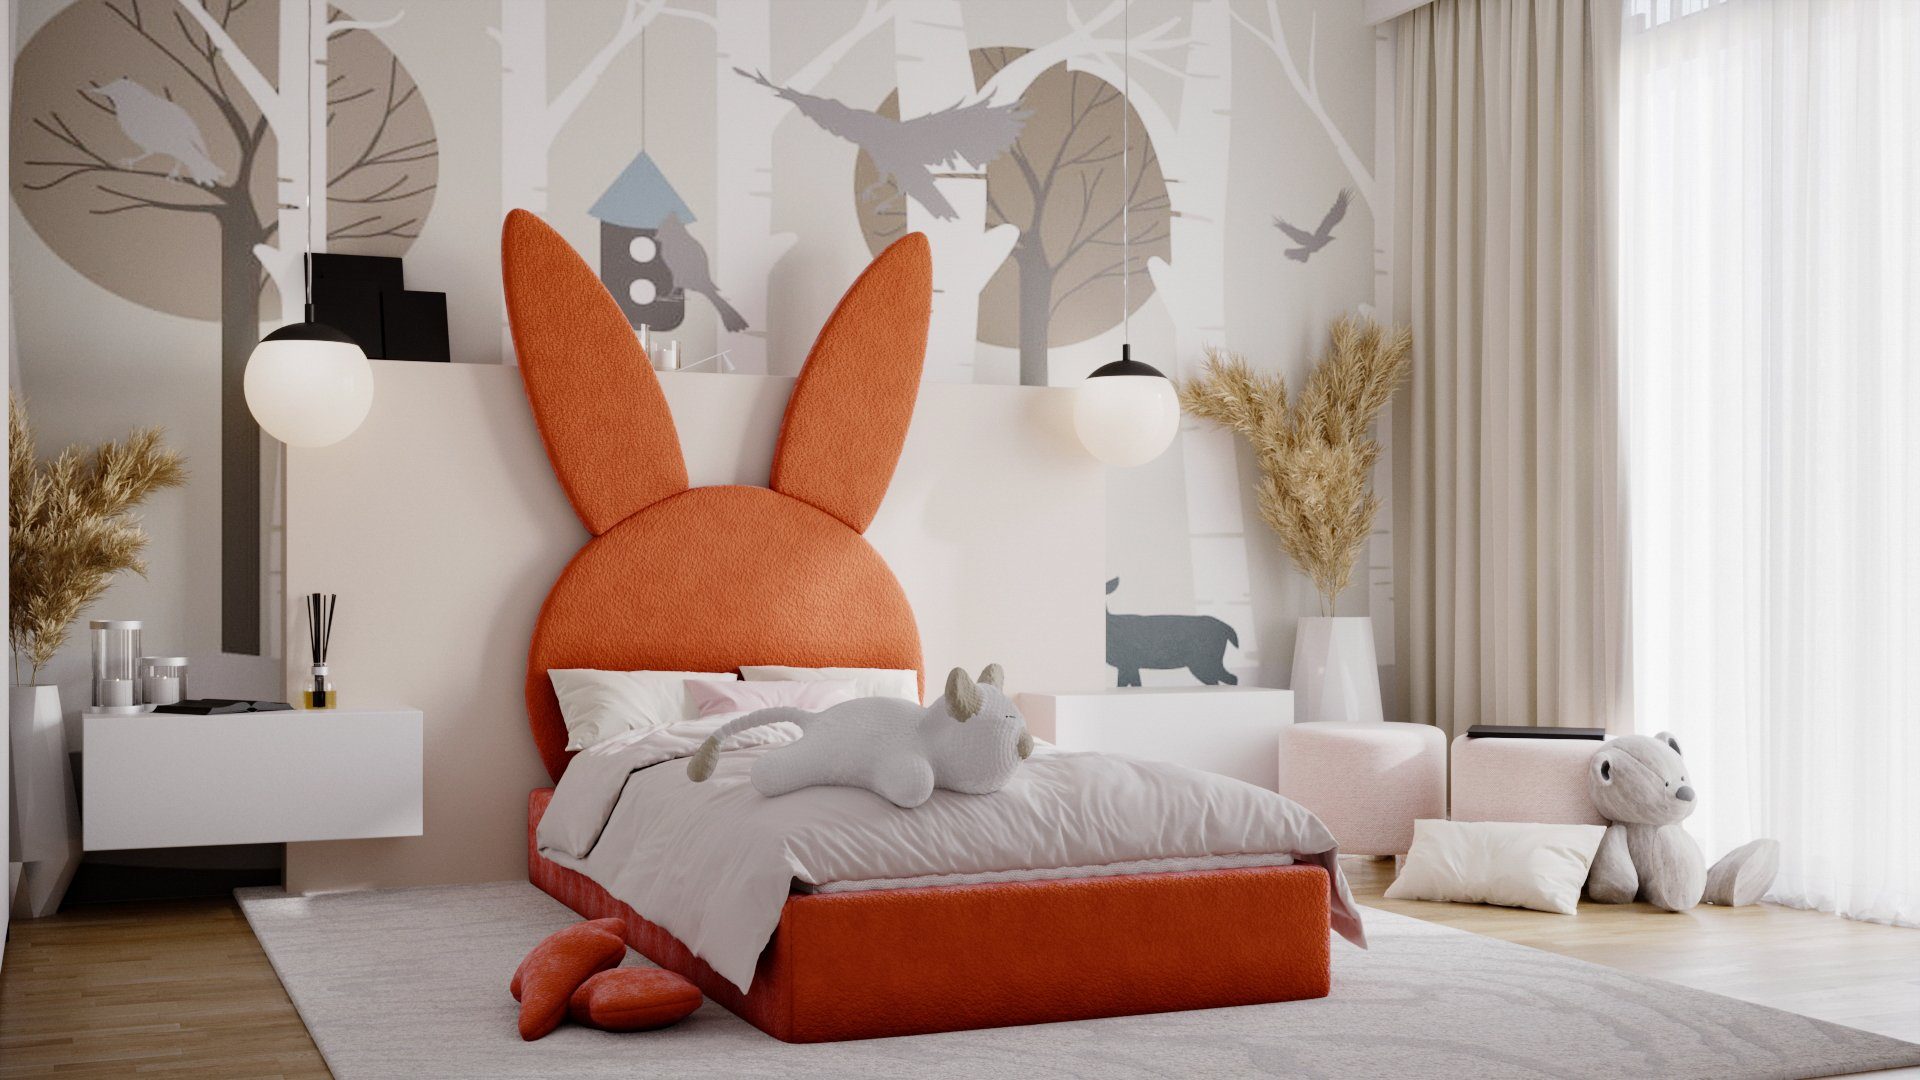 HÄSCHEN ohne Fun Matratze), Orange in Kinderbett Möbel Bukla Polsterbett Comfort-Plus in Ascot (mit Stoff oder Bett Häschenform Kopfteil